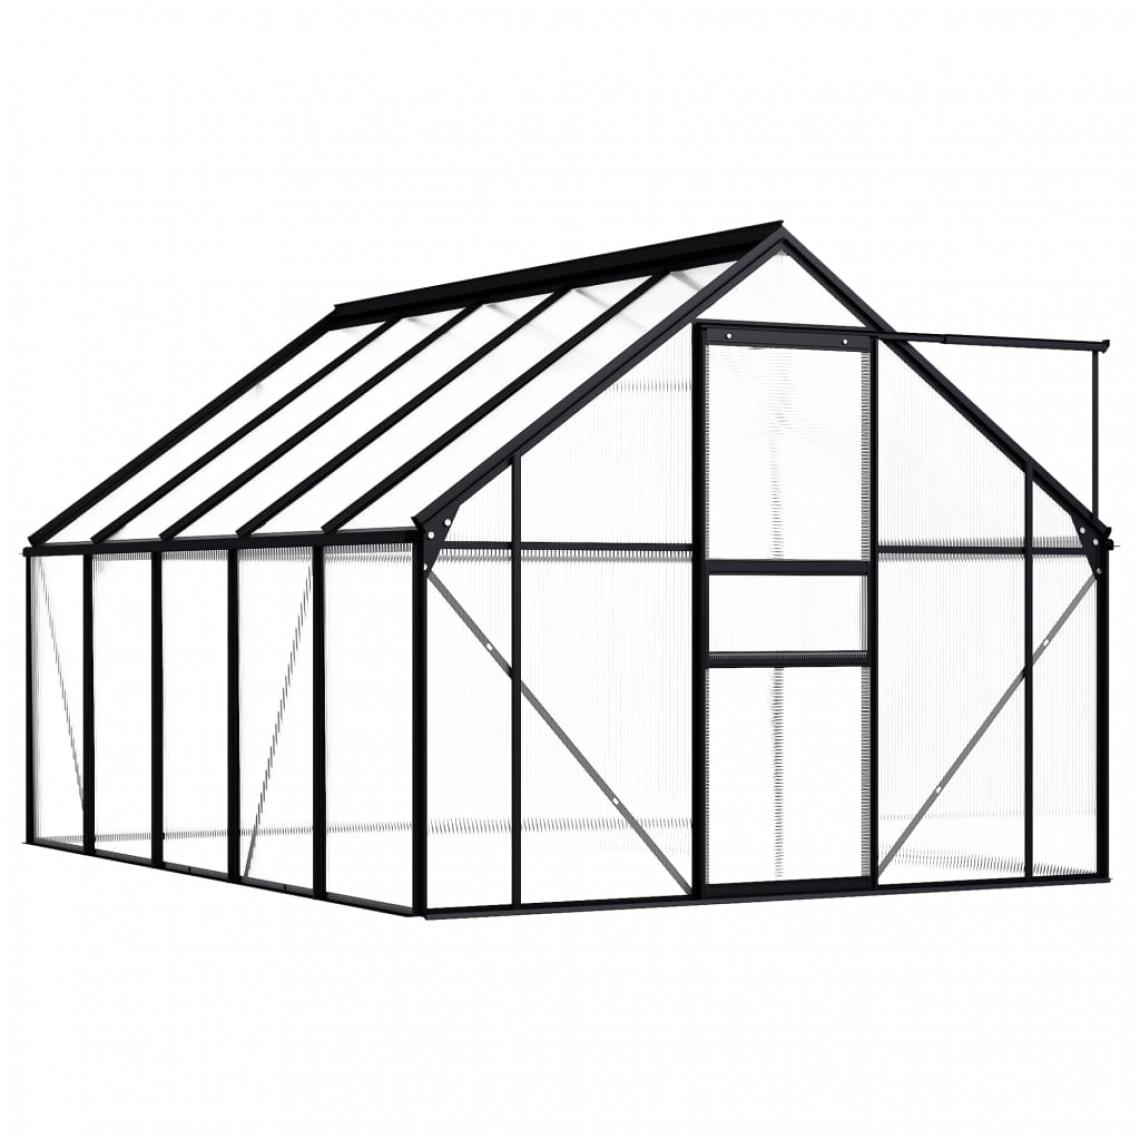 Icaverne - Icaverne - Serres de jardin ensemble Serre Anthracite Aluminium 5,89 m² - Serres en verre